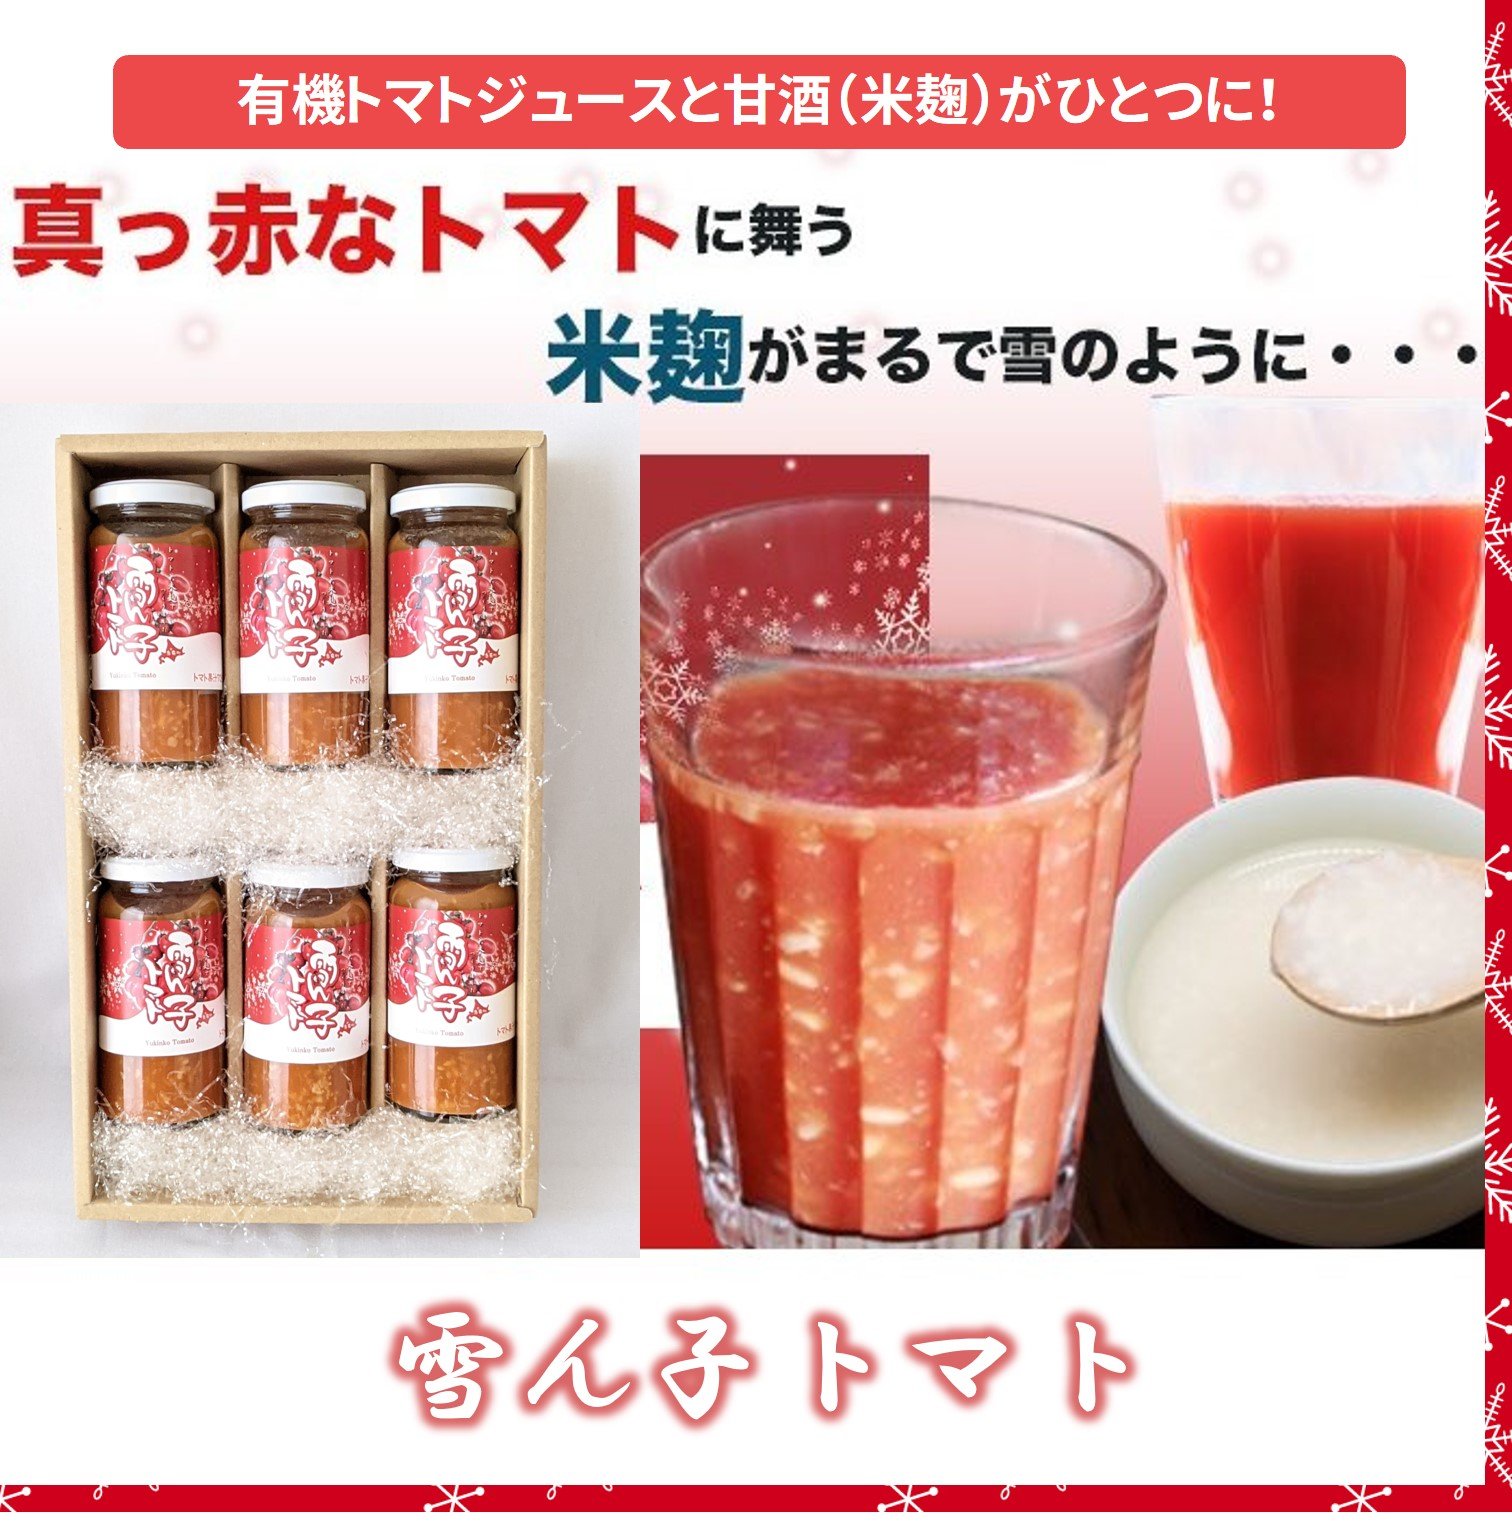 有機JAS 雪ん子トマト/トマトジュース 米麹甘酒 ミックス/150ml×6本セット